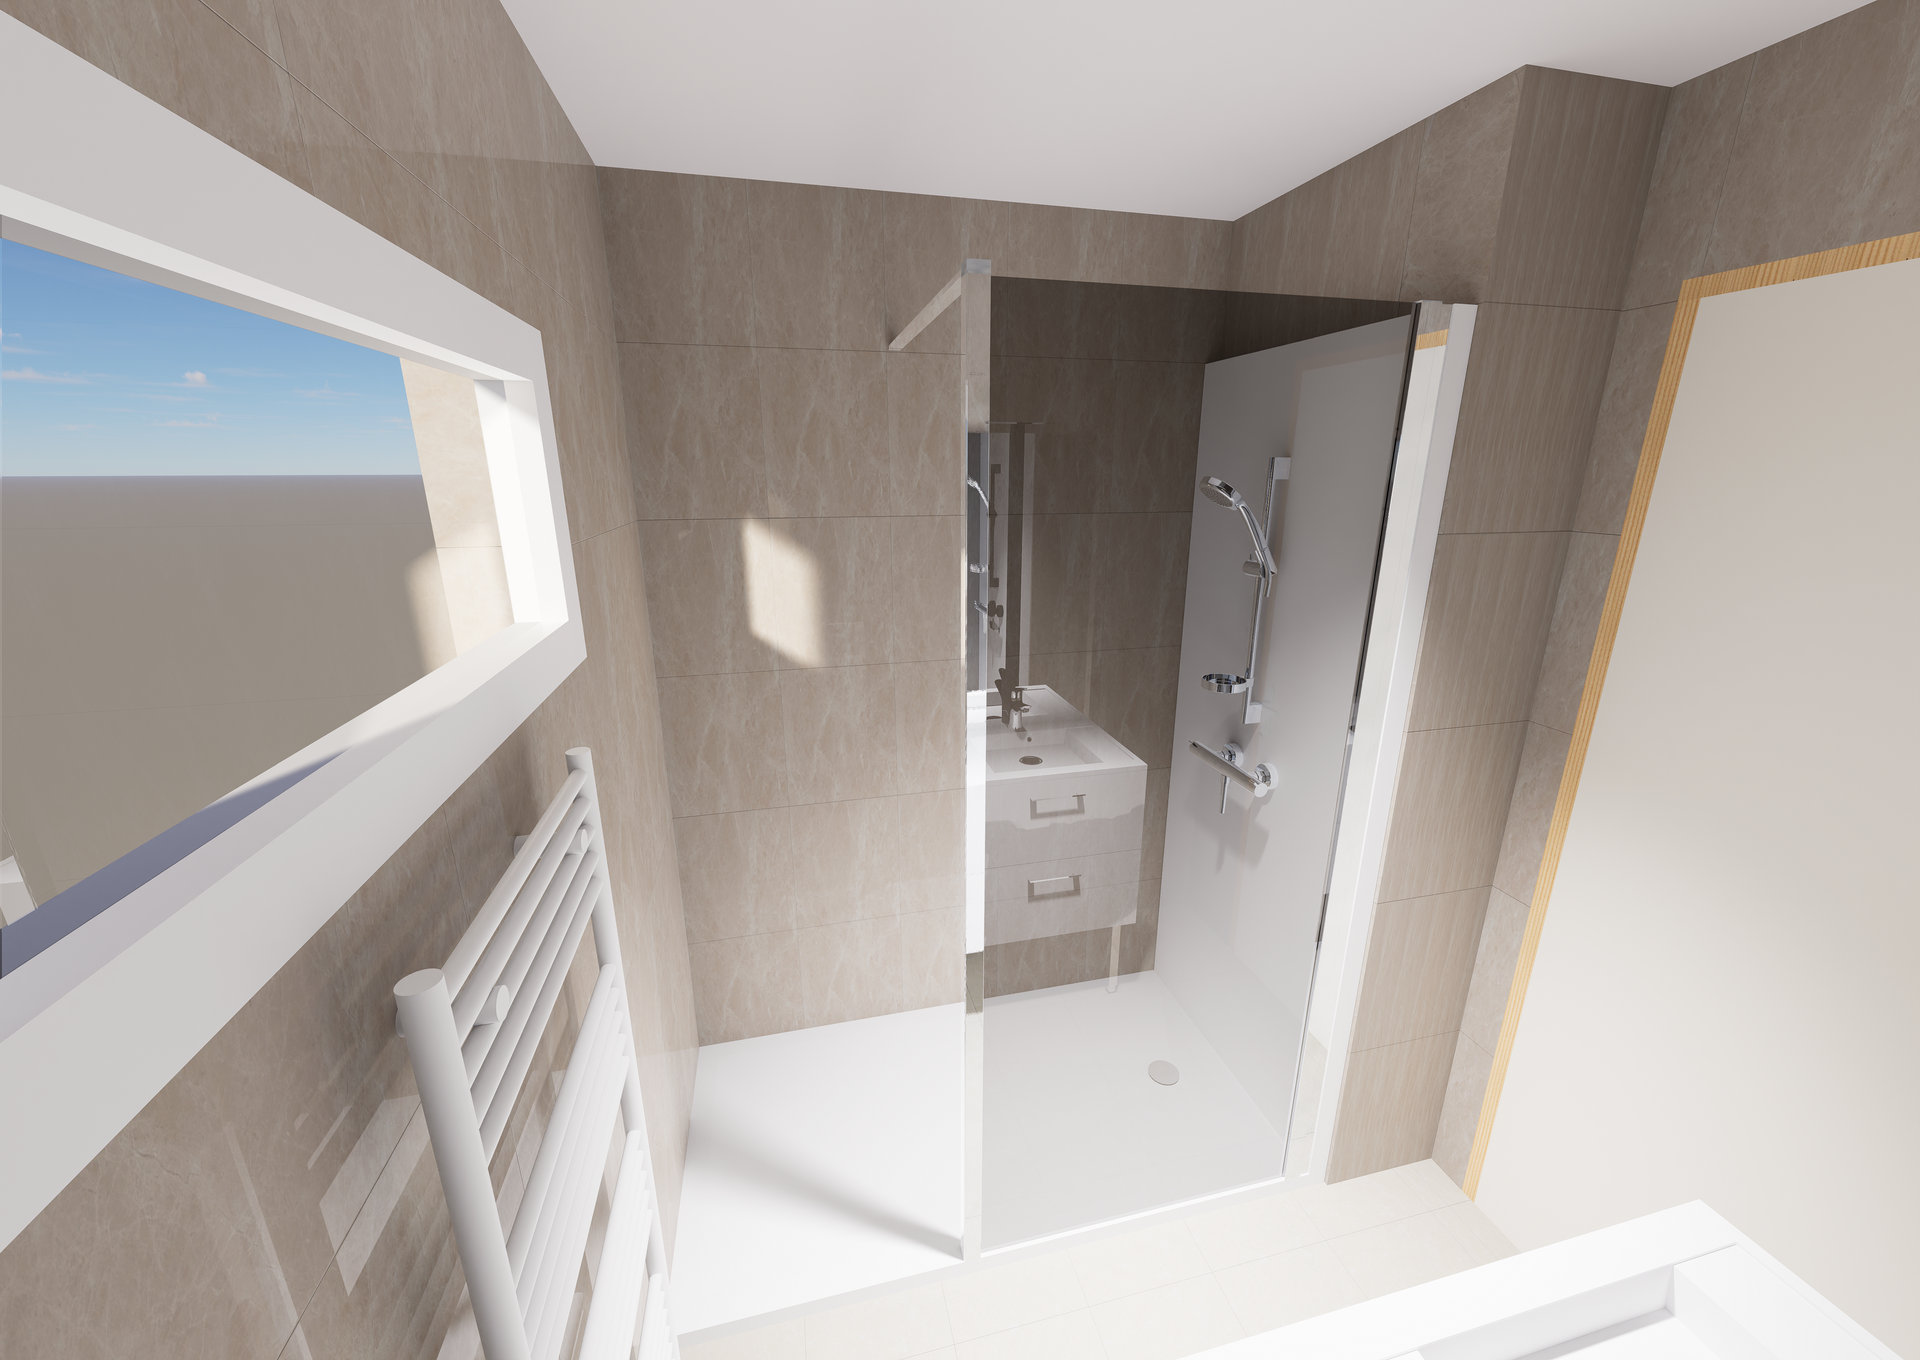 Plan 3D d'une salle de bains avec douche conçu par Douches Meyer & Fils